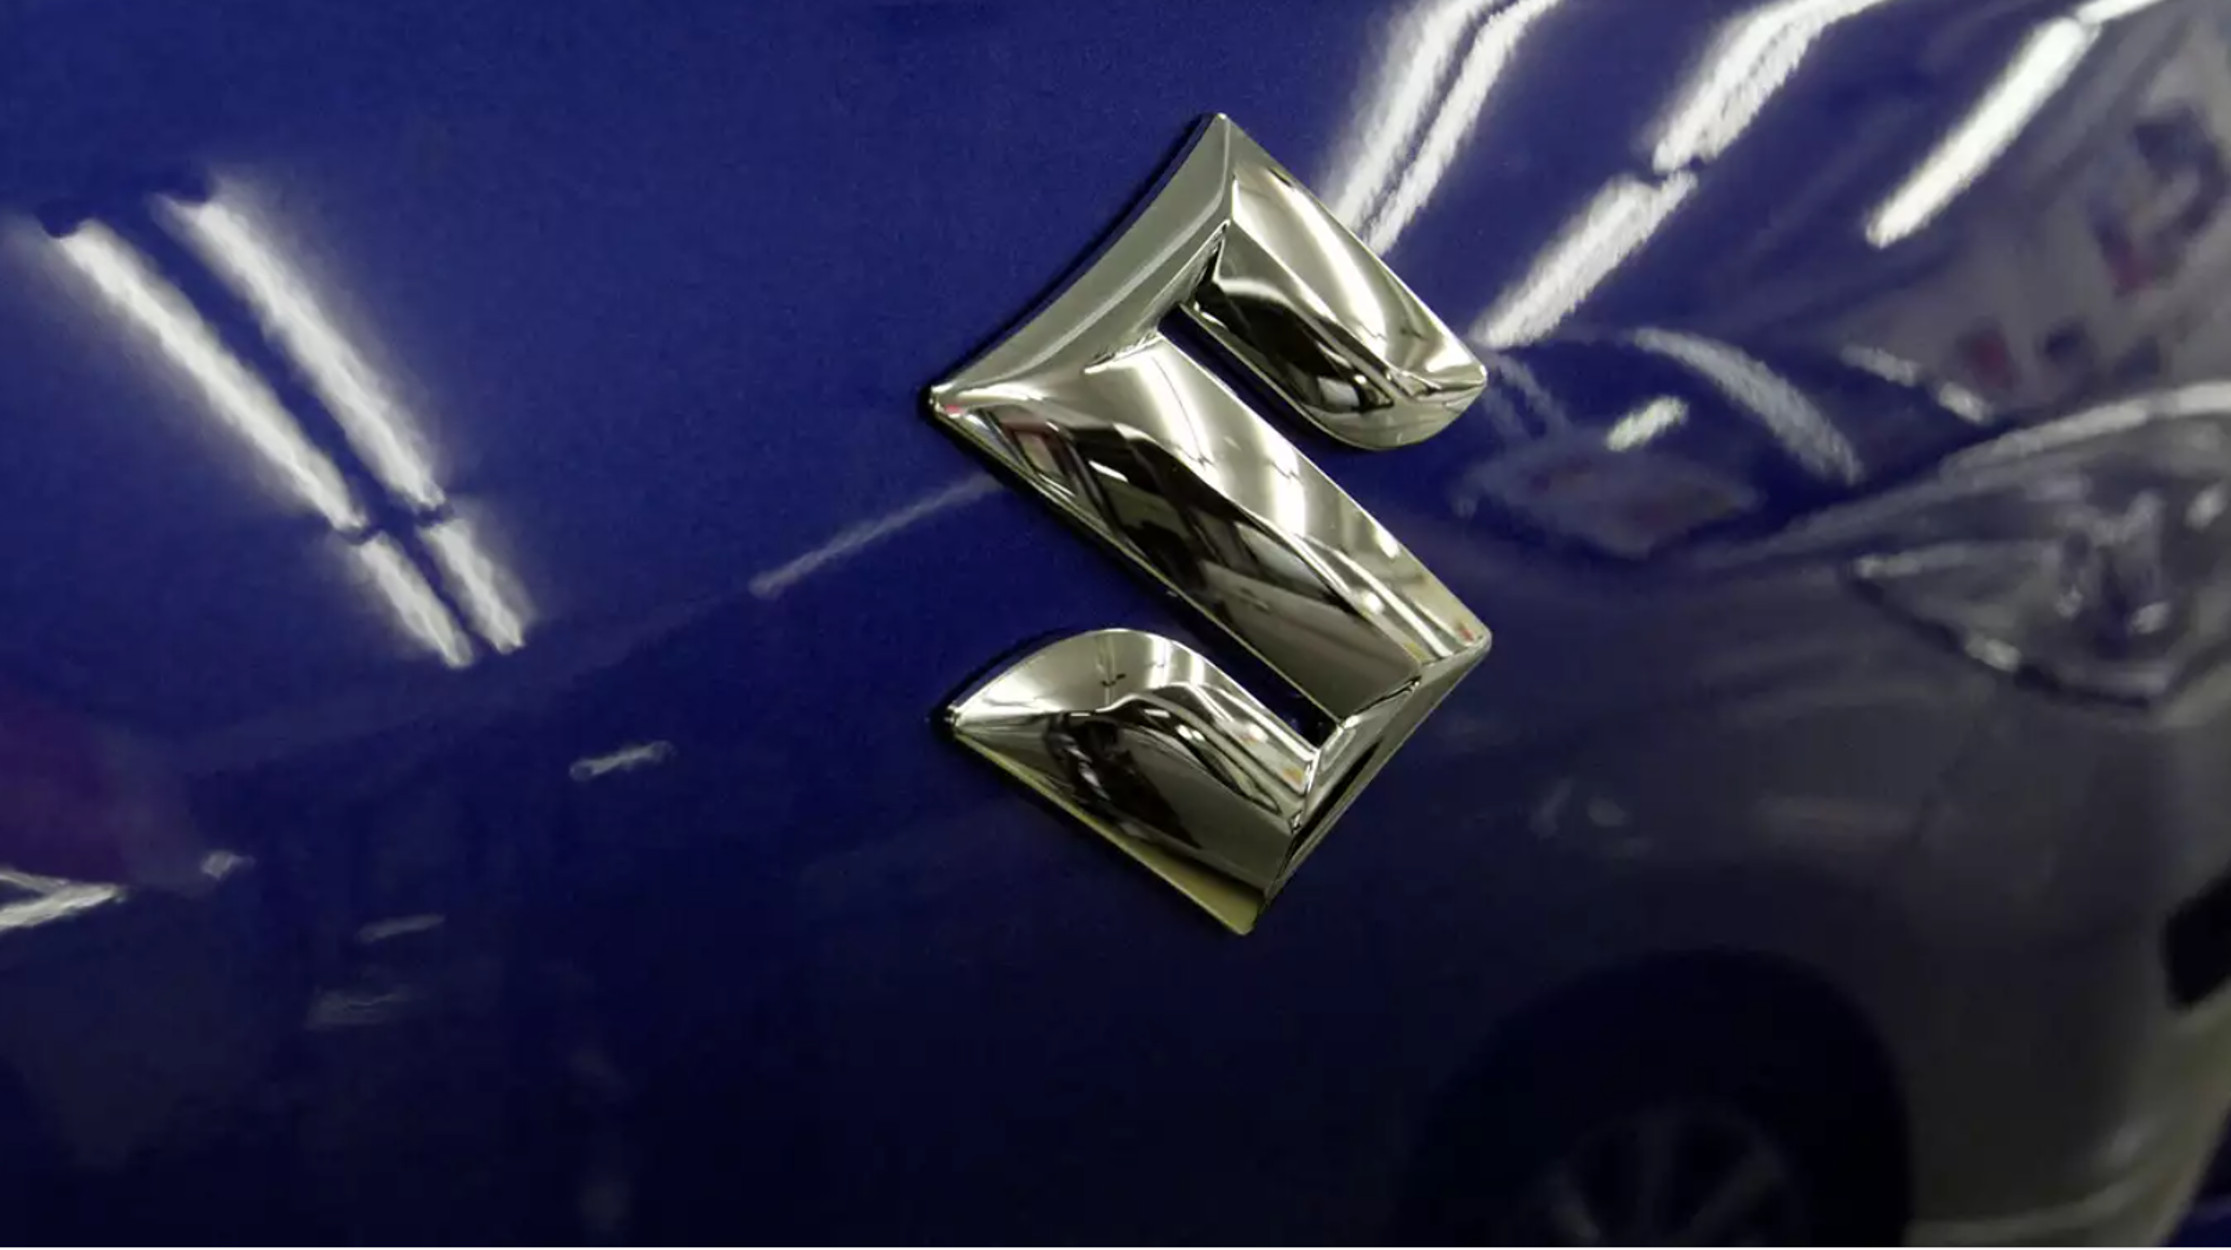 Έρευνες στην Suzuki για υποτιθέμενη παραποίηση δοκιμών diesel αυτοκινήτων